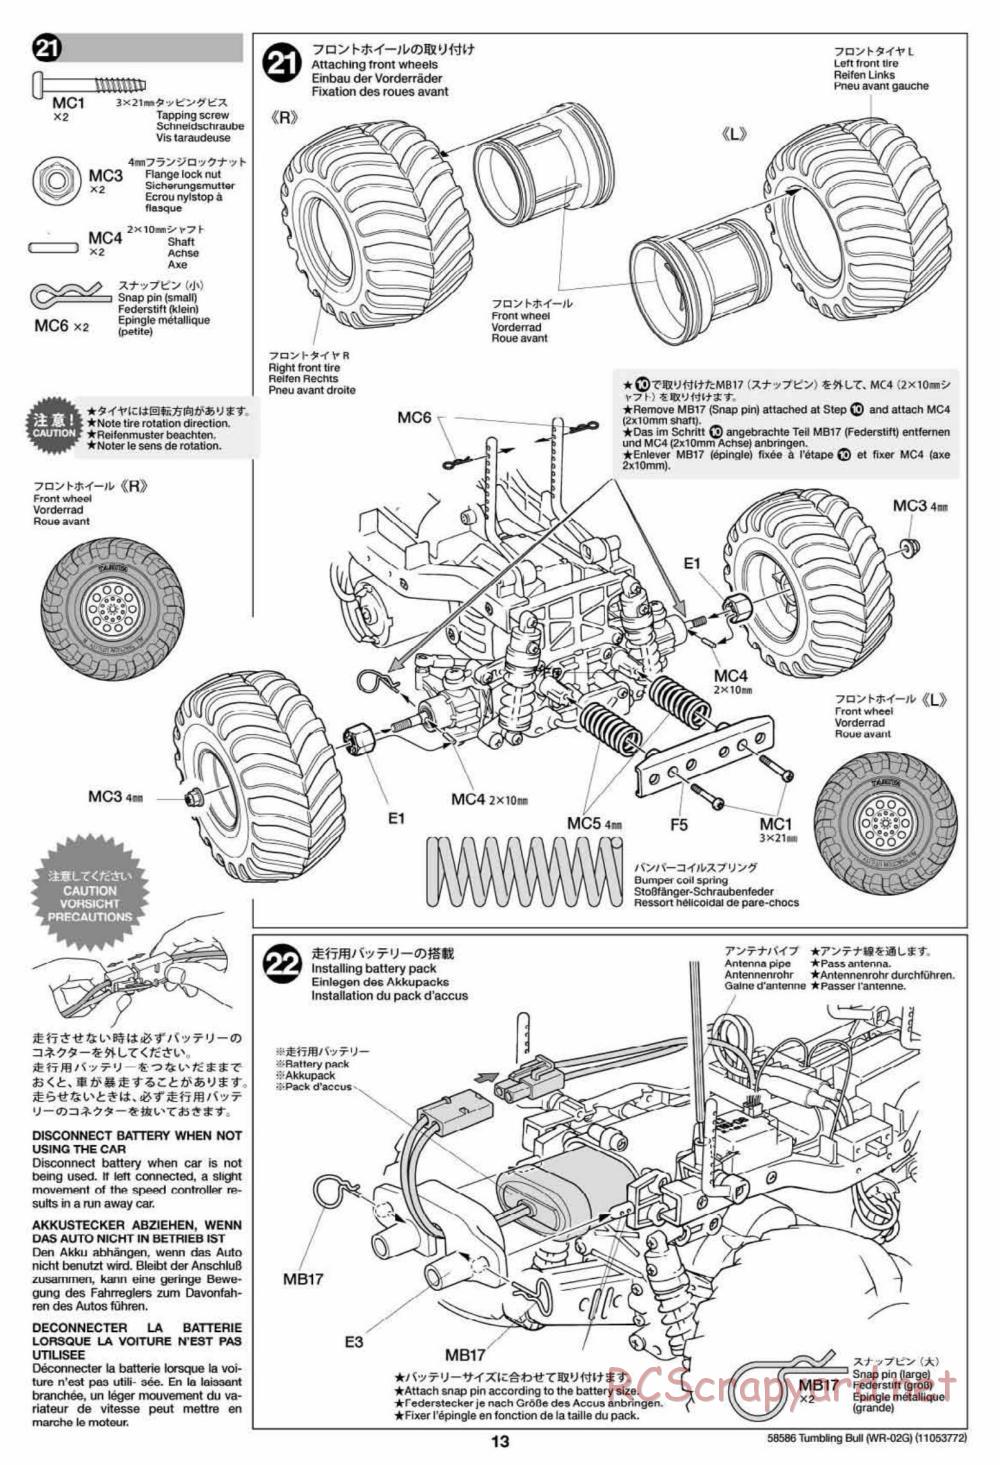 Tamiya - Tumbling Bull Chassis - Manual - Page 13